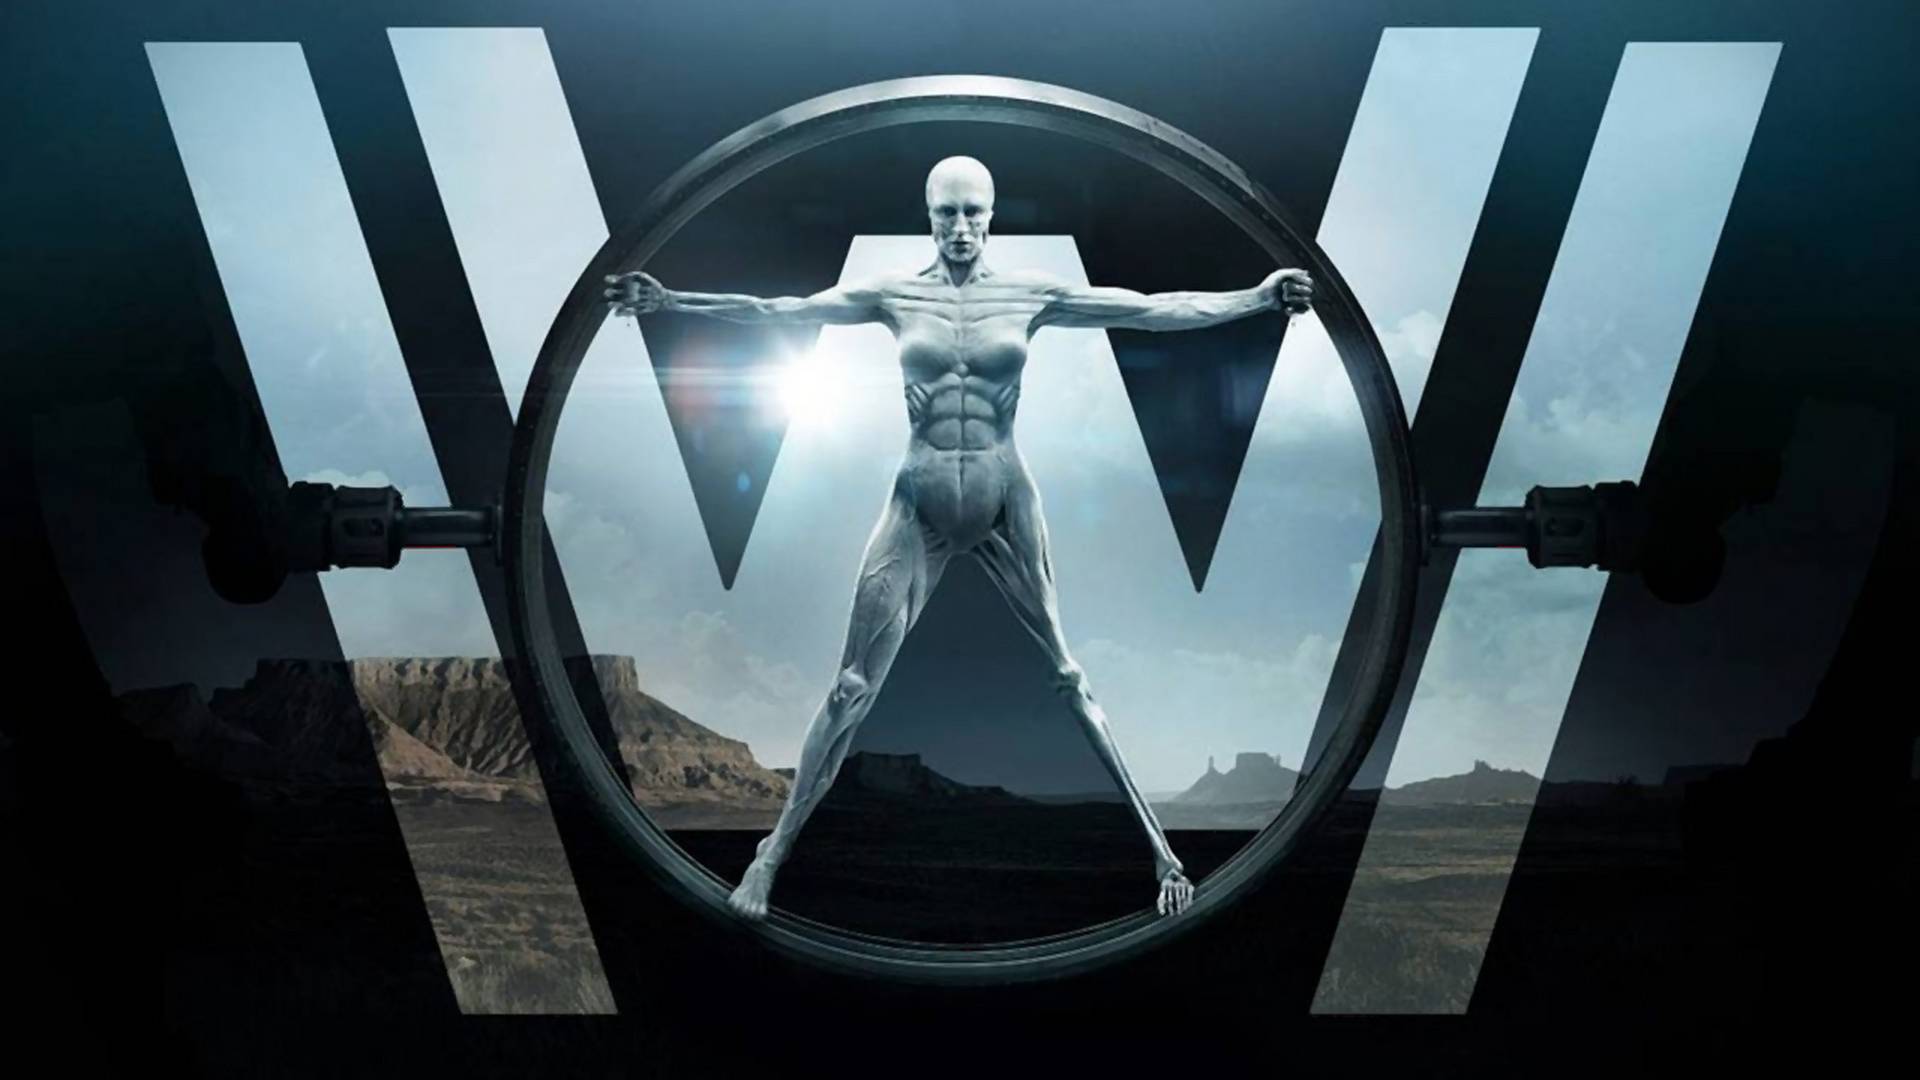 Tvorci serije "Westworld" se bore protiv spojlera - spojlovanjem